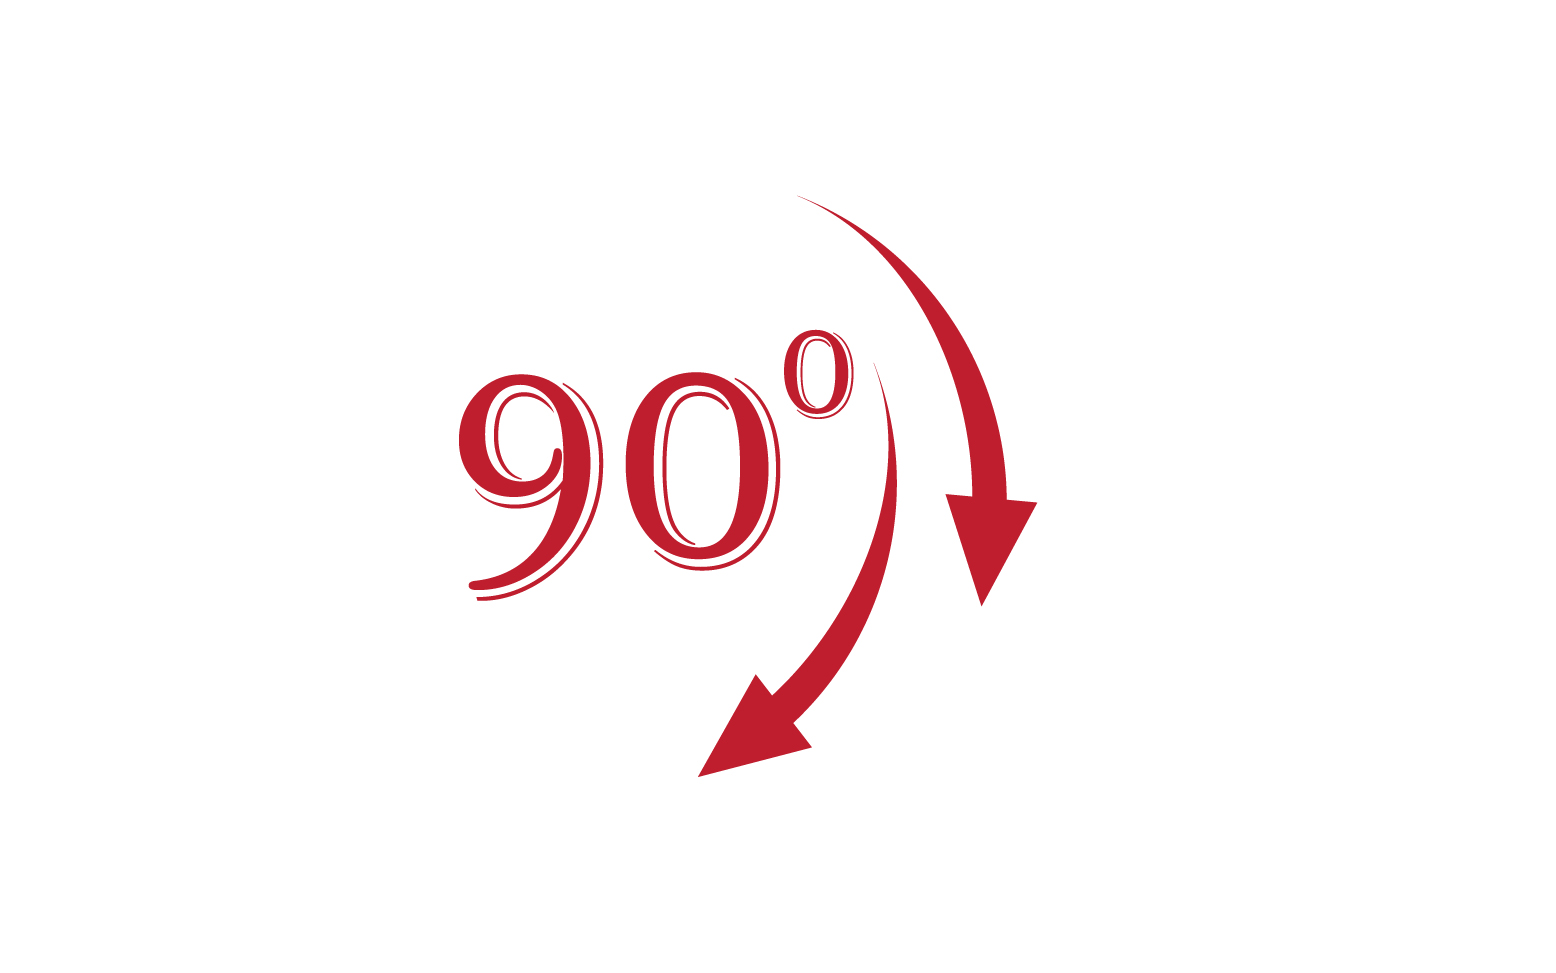 90 degree angle rotation icon symbol logo v47